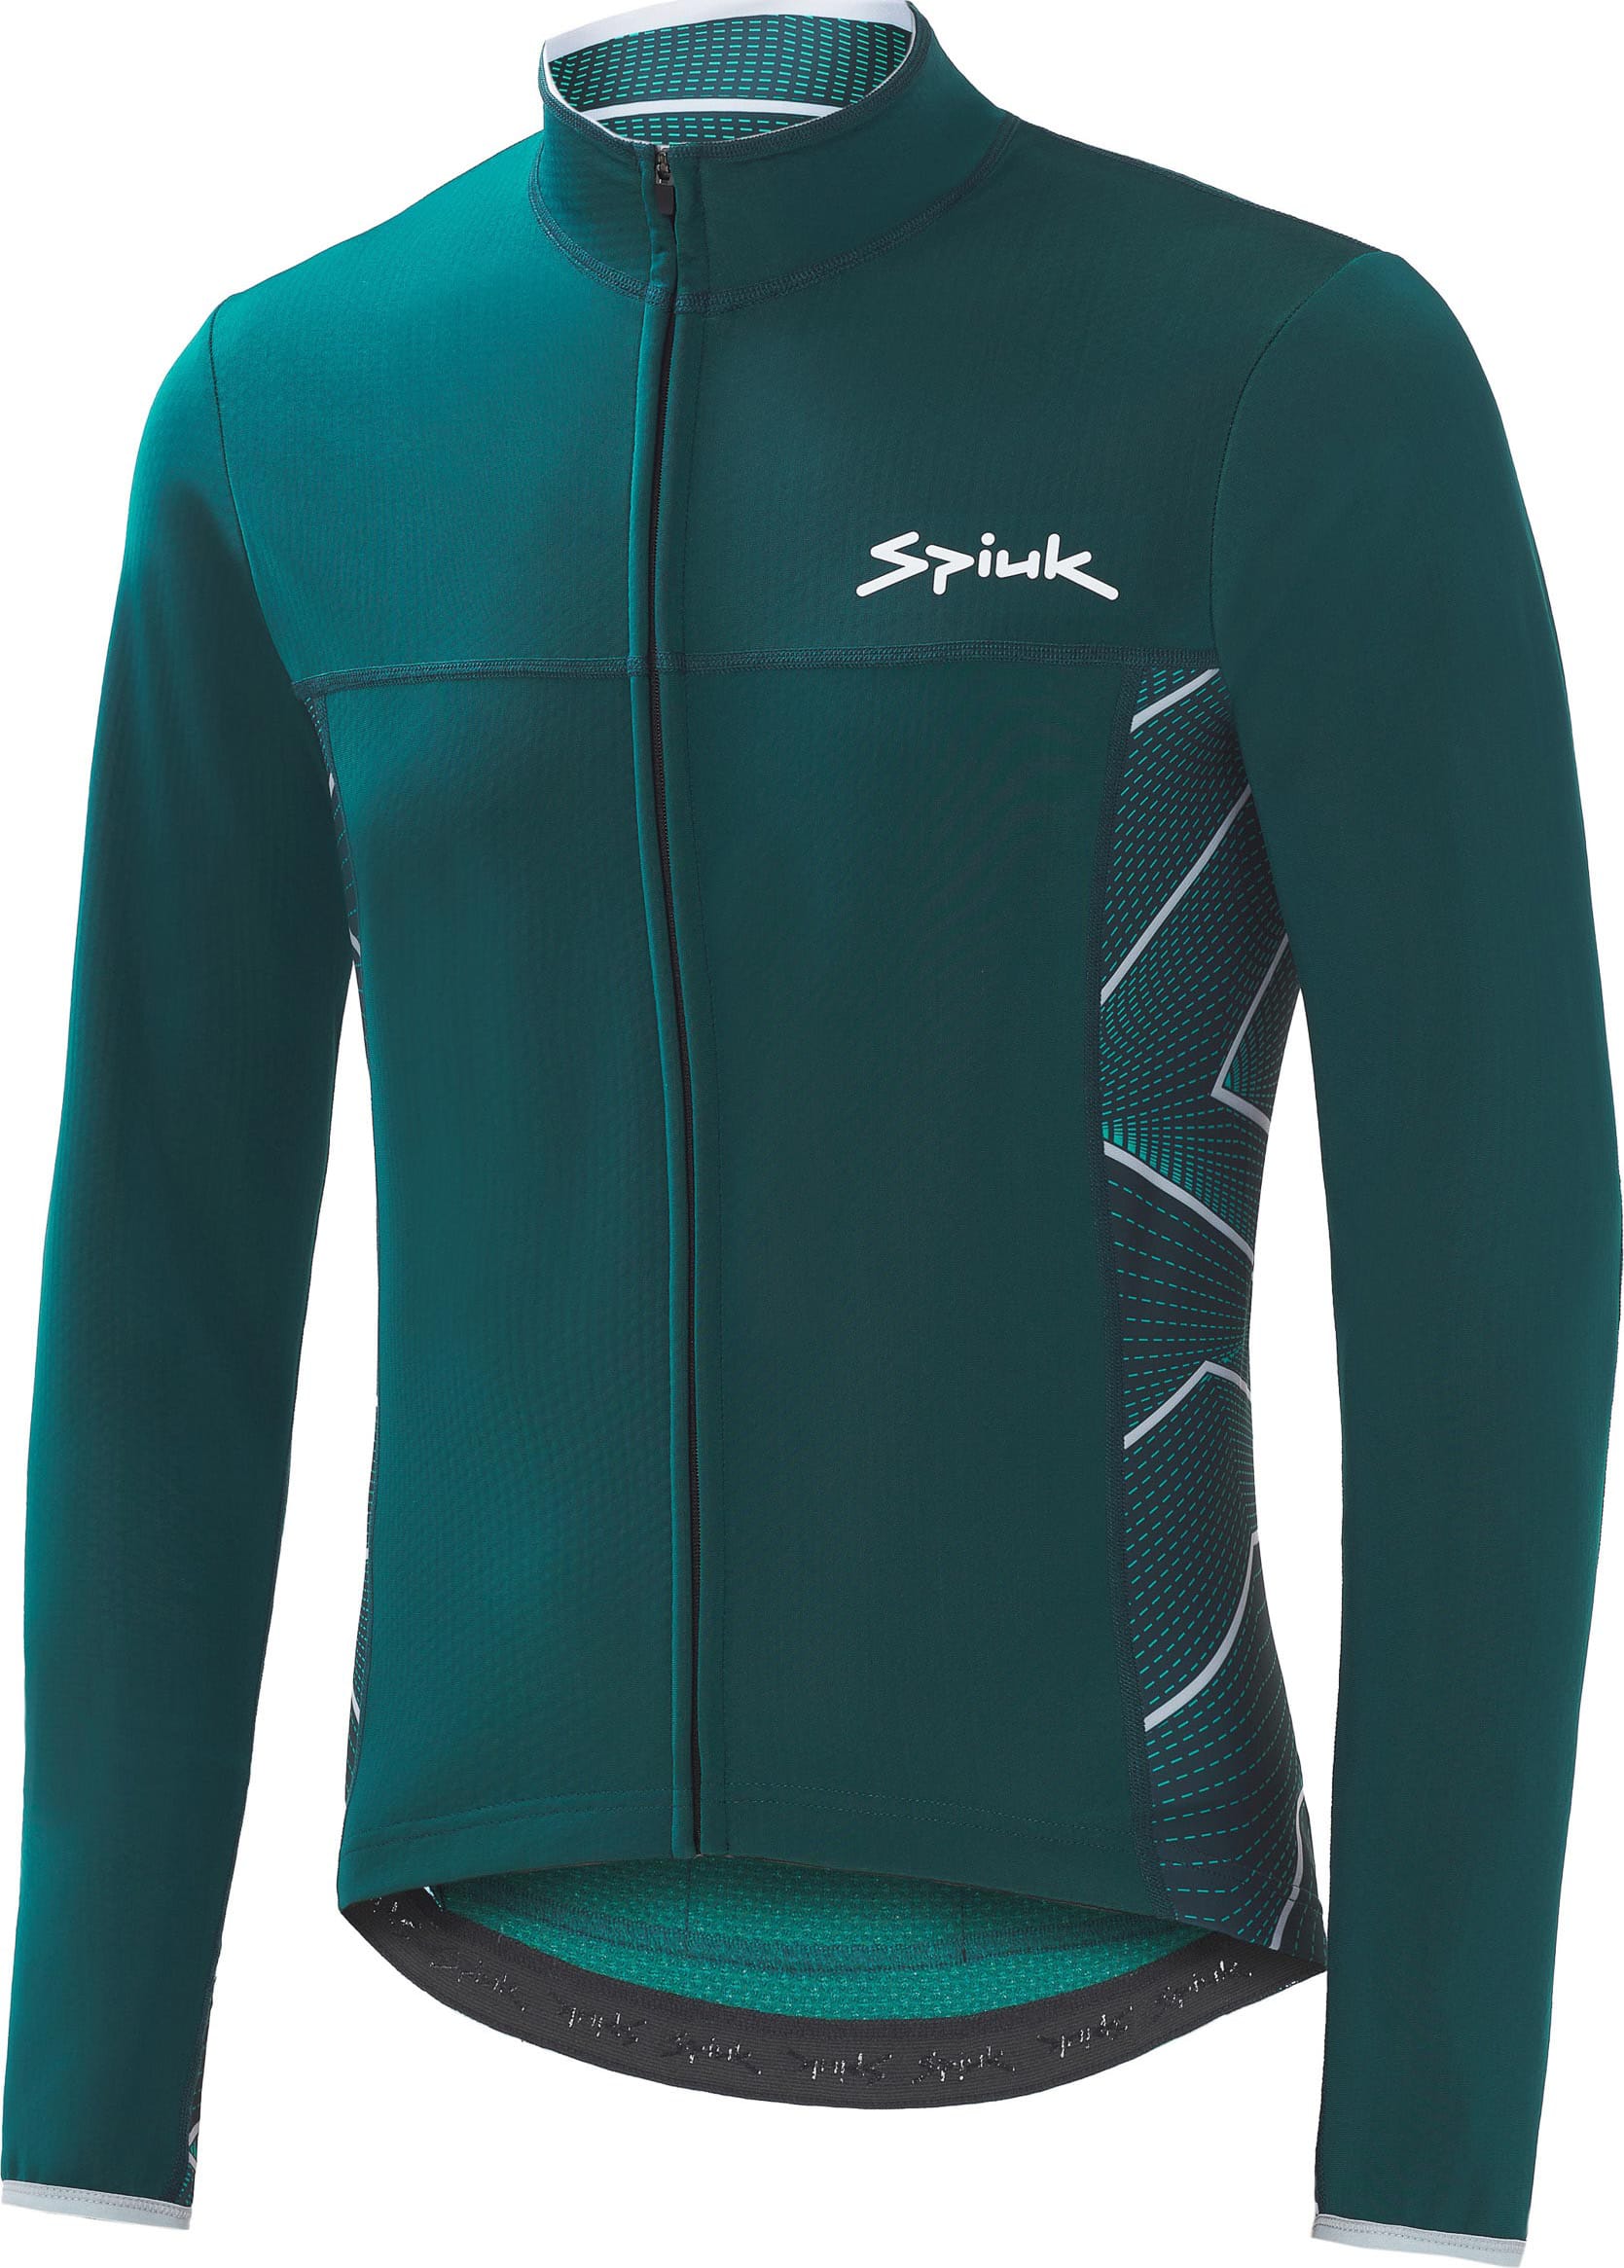 Куртка Spiuk Boreas Light Membrane мужская зеленая S фото 